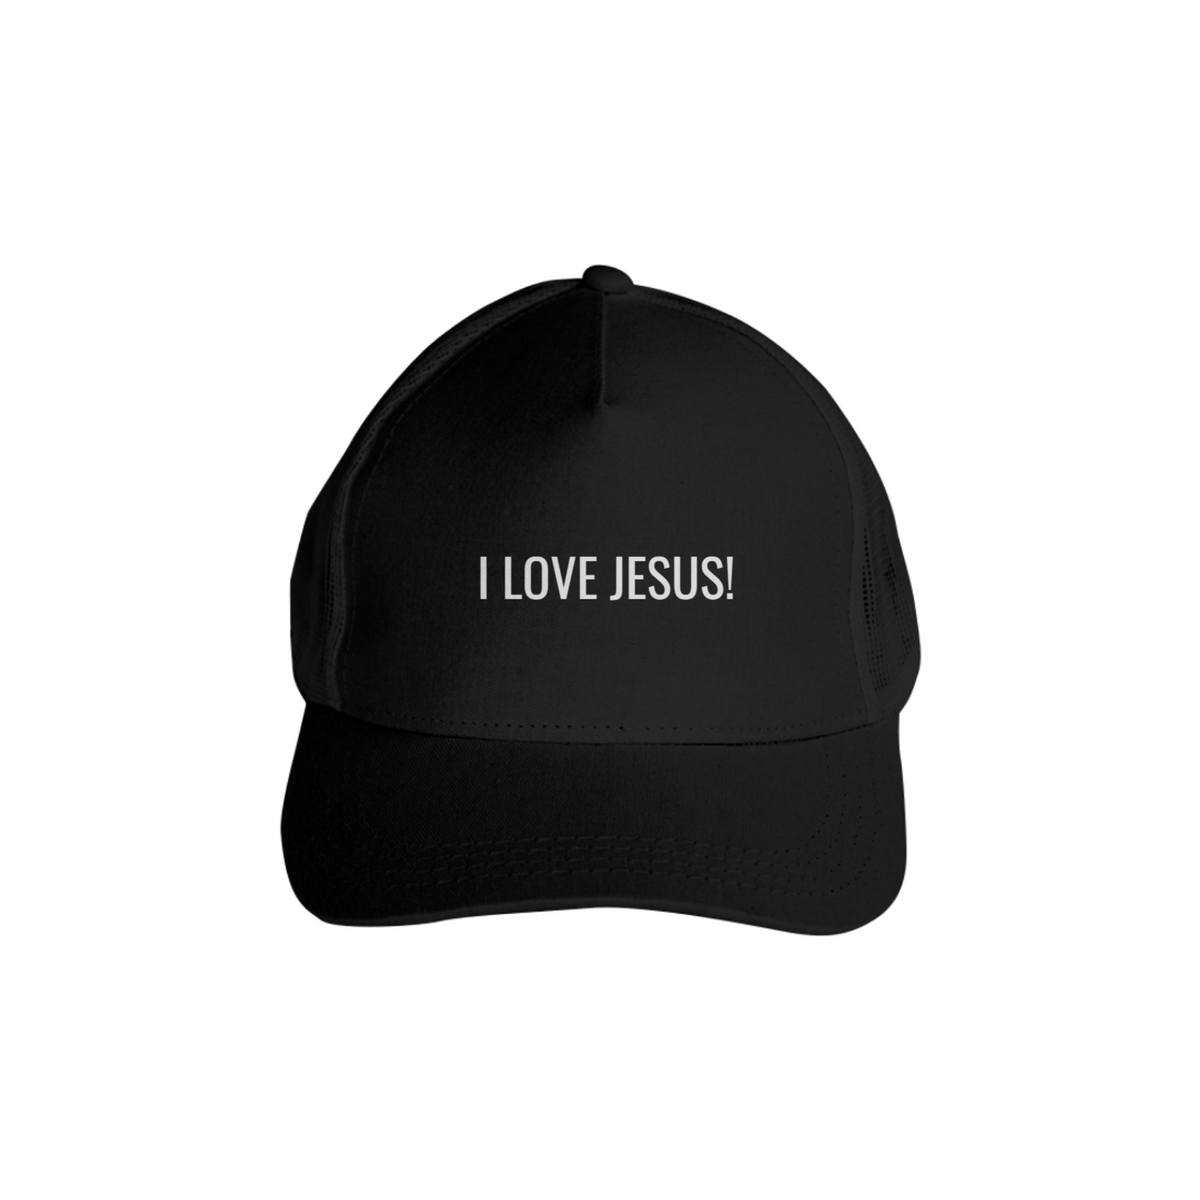 Nome do produto: Boné - I LOVE JESUS!